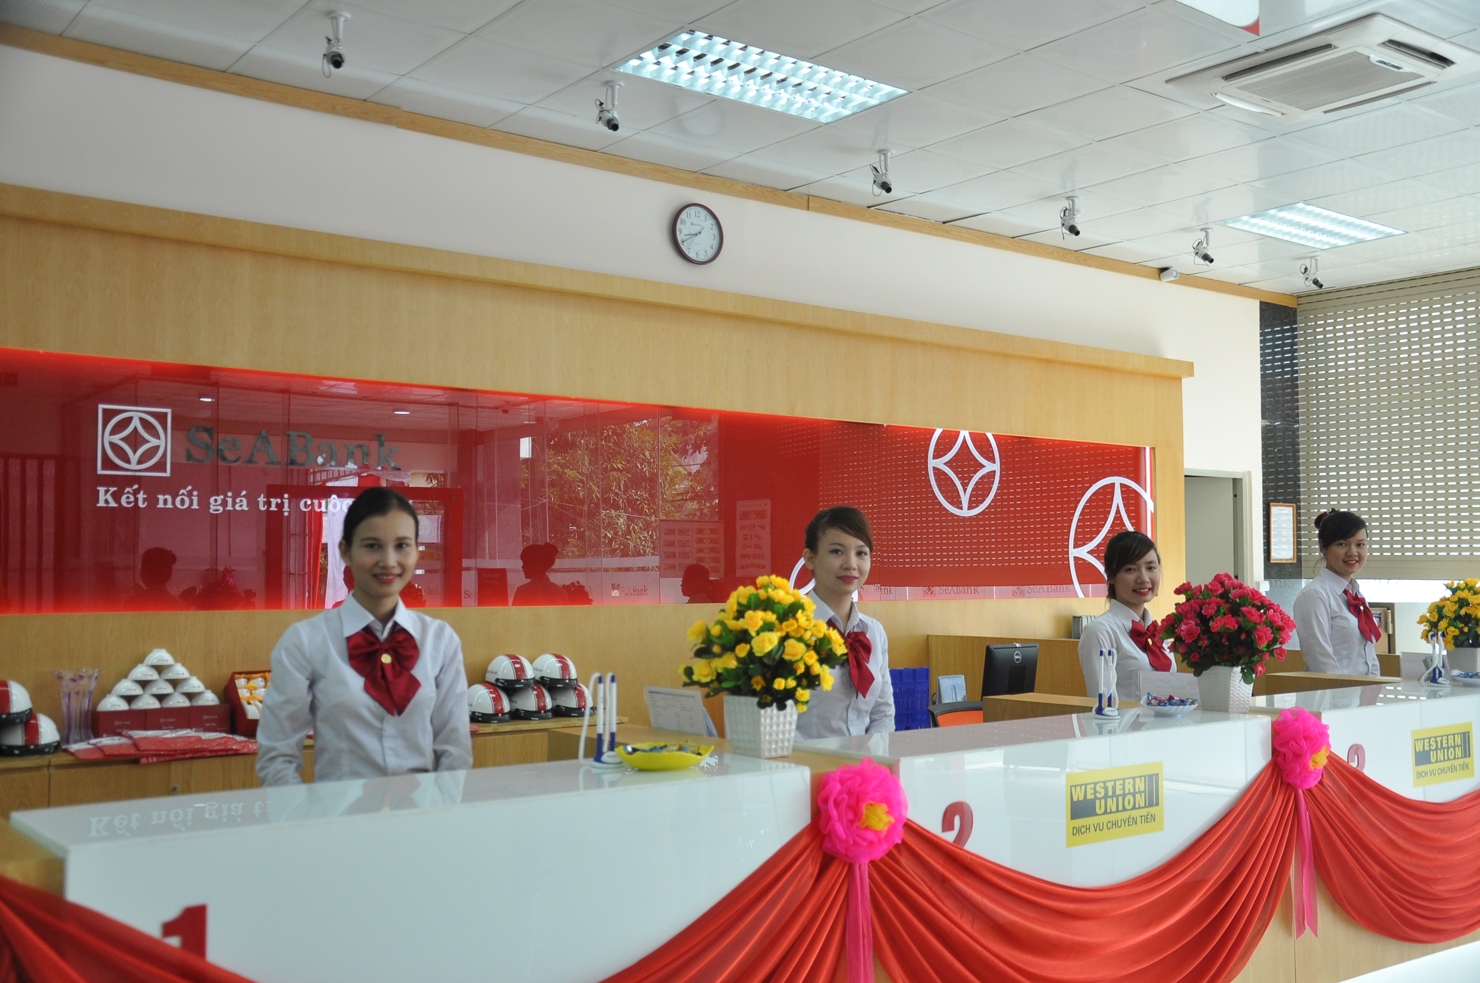 Được sự chấp thuận của Ngân hàng Nhà nước, SeABank vừa khai trương trụ sở mới nhiều điểm giao dịch tại Đắk Lắk, TP.Hồ Chí Minh. Nguồn: seababk.com.vn